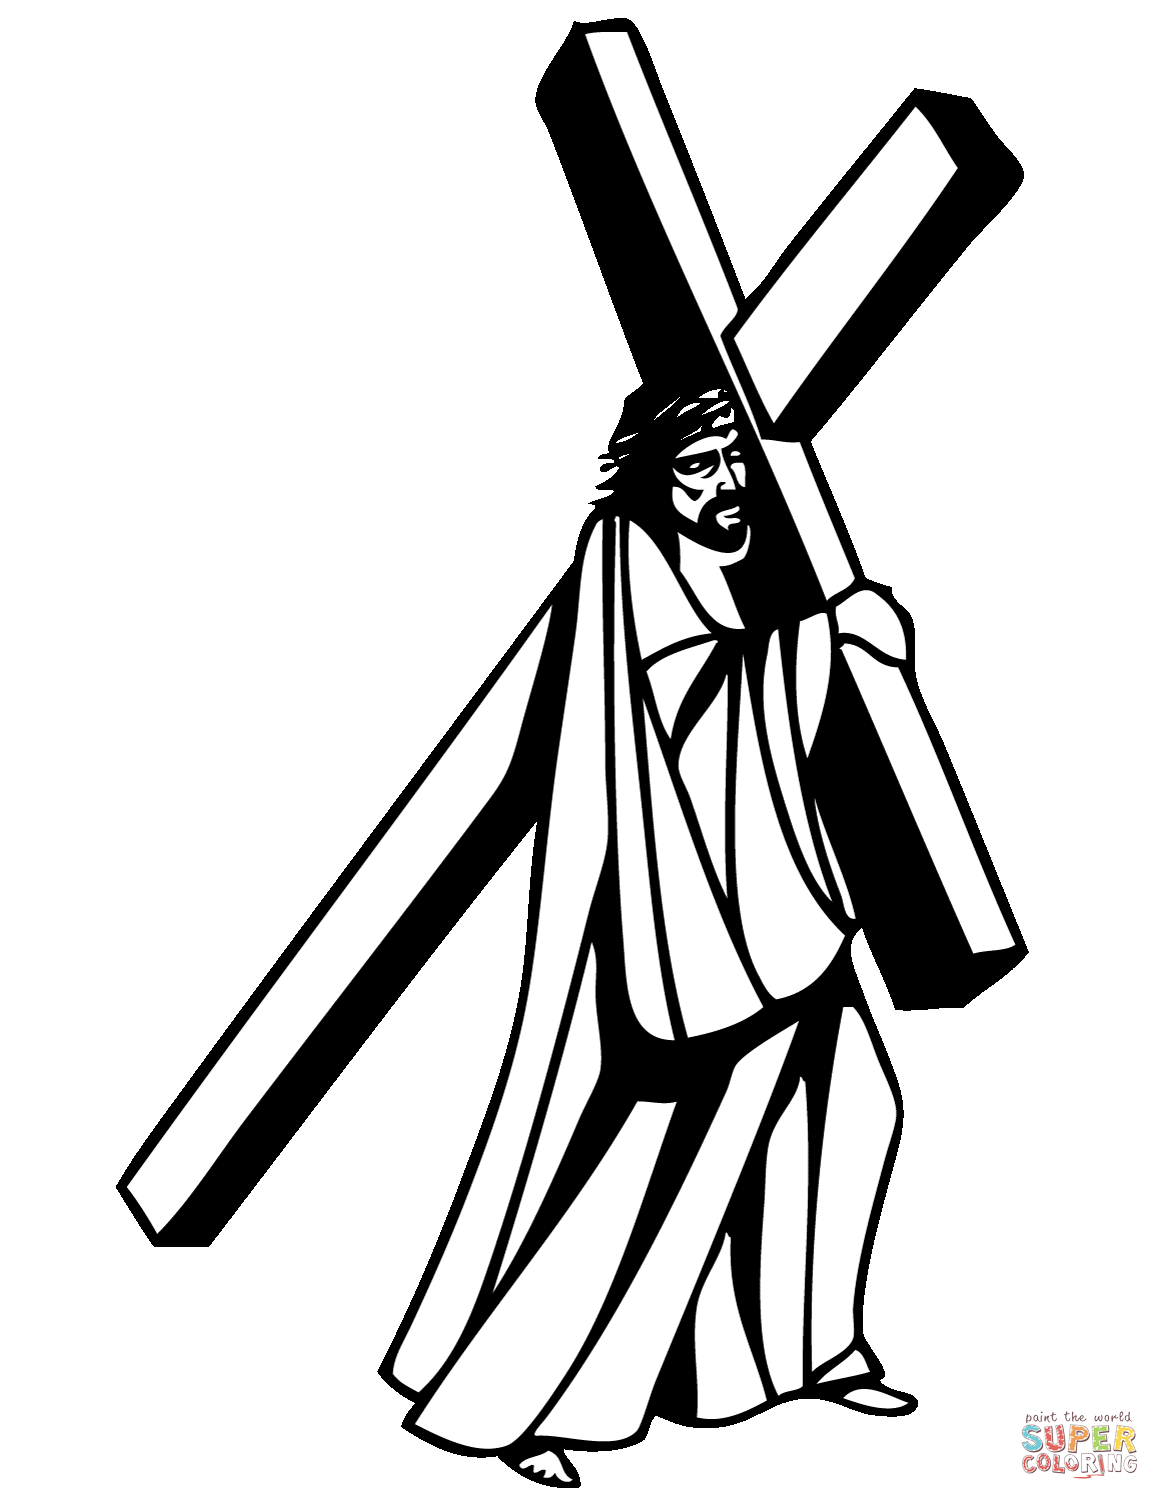 Dibujo de jesucristo cargando la cruz para colorear dibujos para colorear imprimir gratis